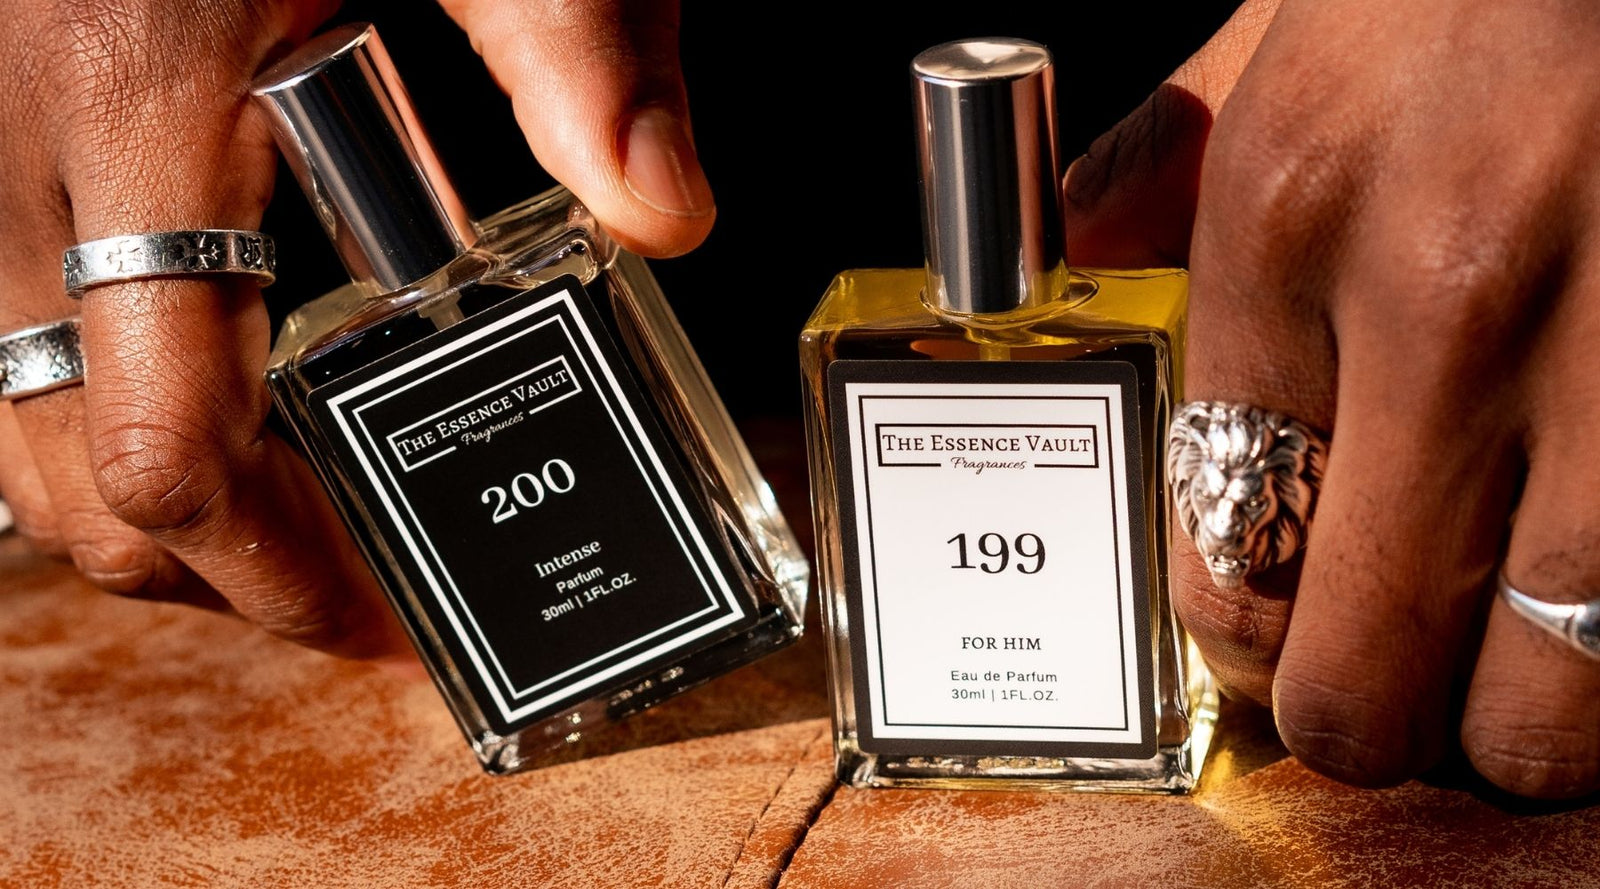 Perfume ME 199: Similar To Nuit De Feu By Louis Vuitton